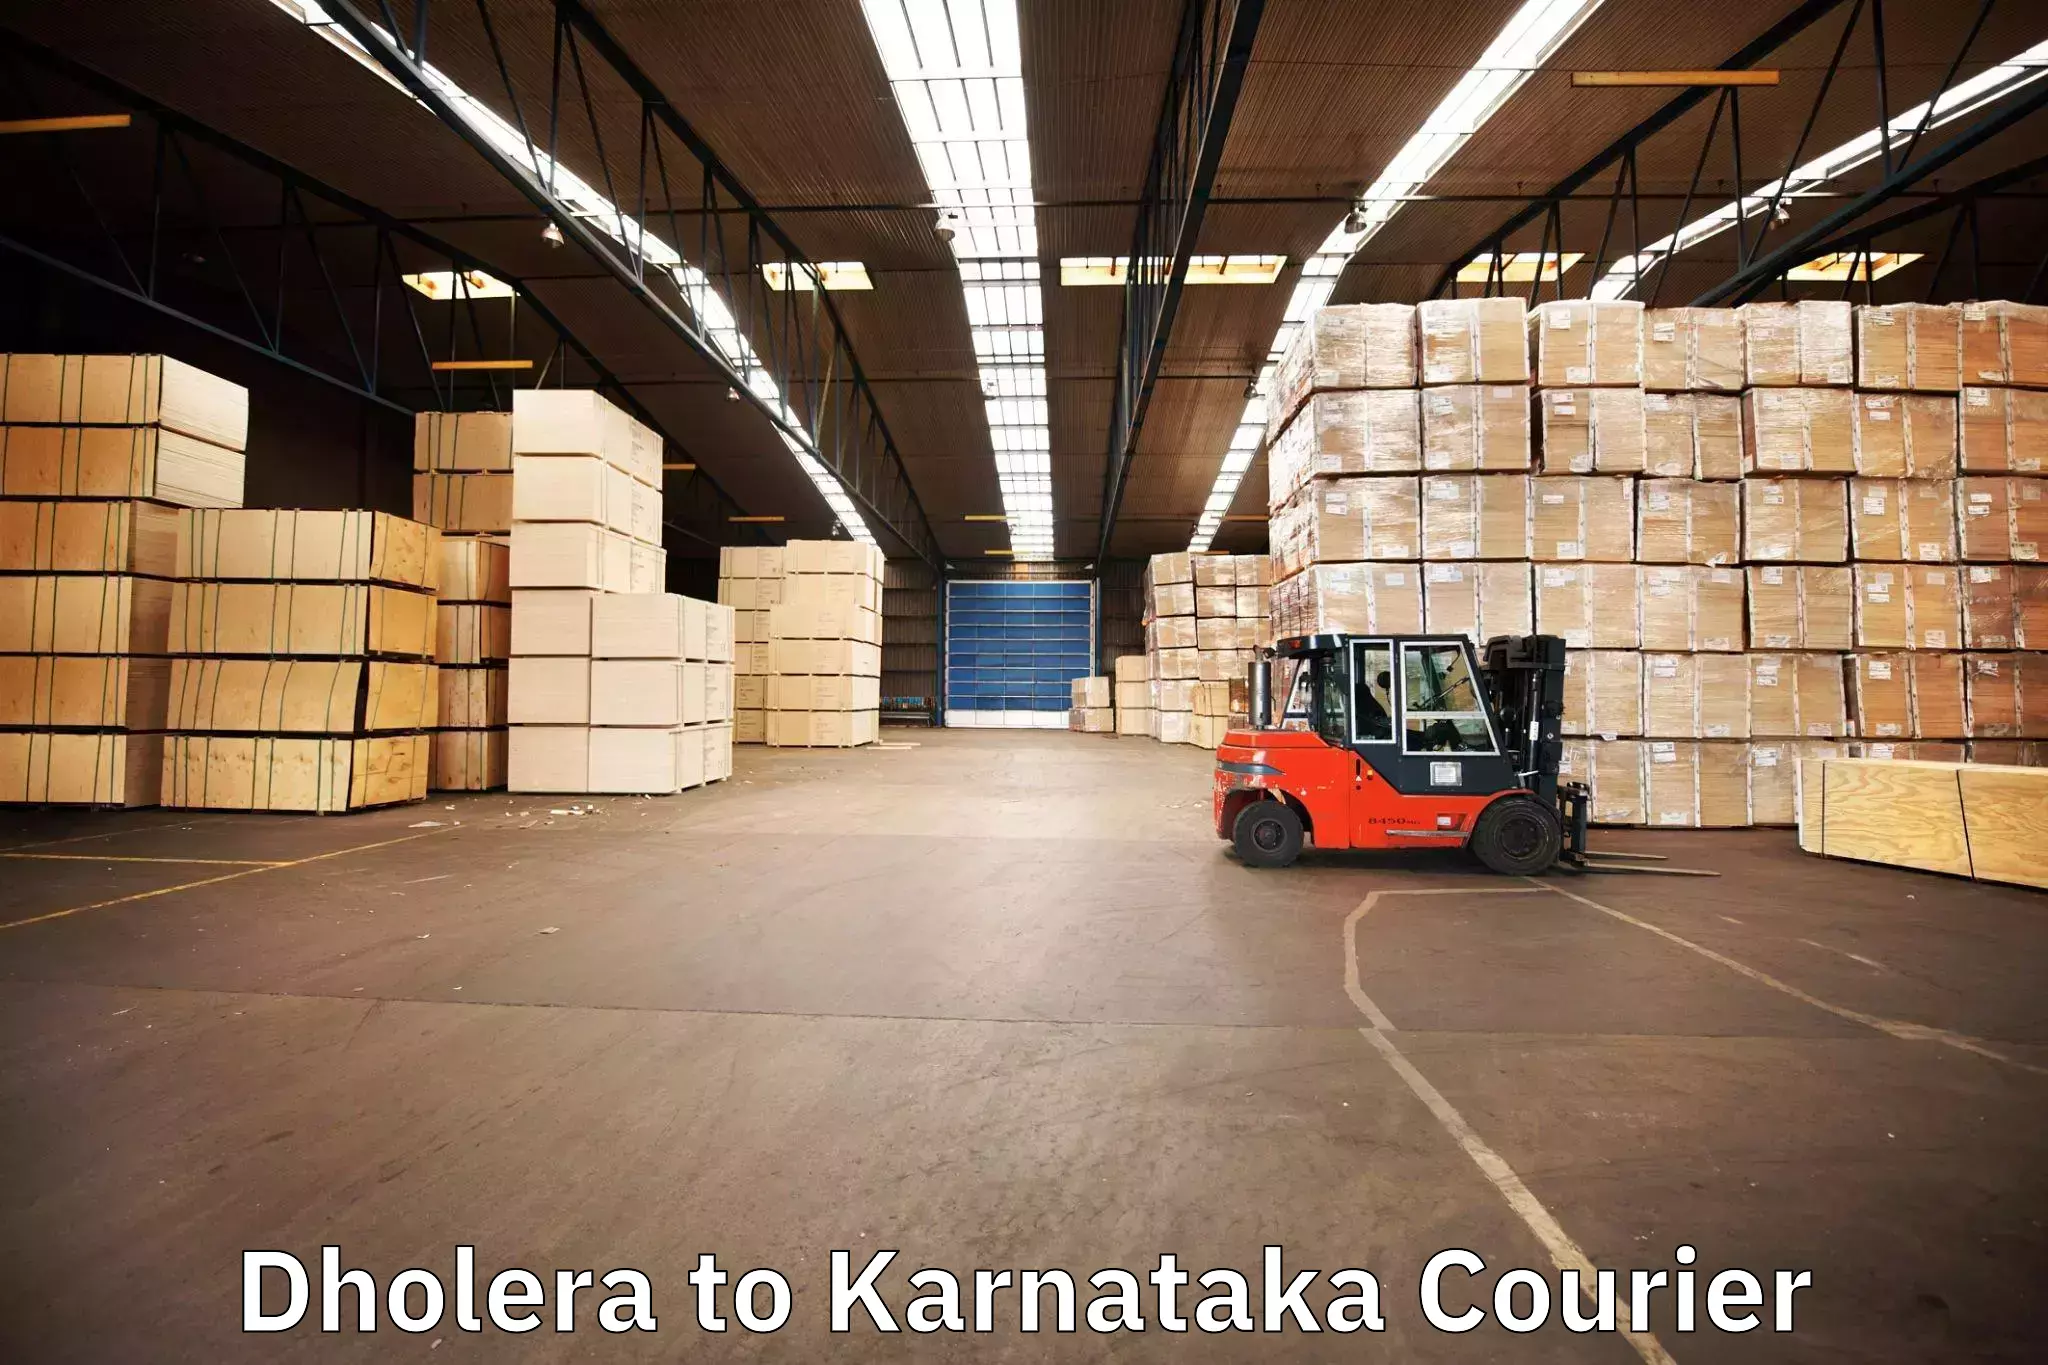 Furniture moving experts Dholera to Karnataka